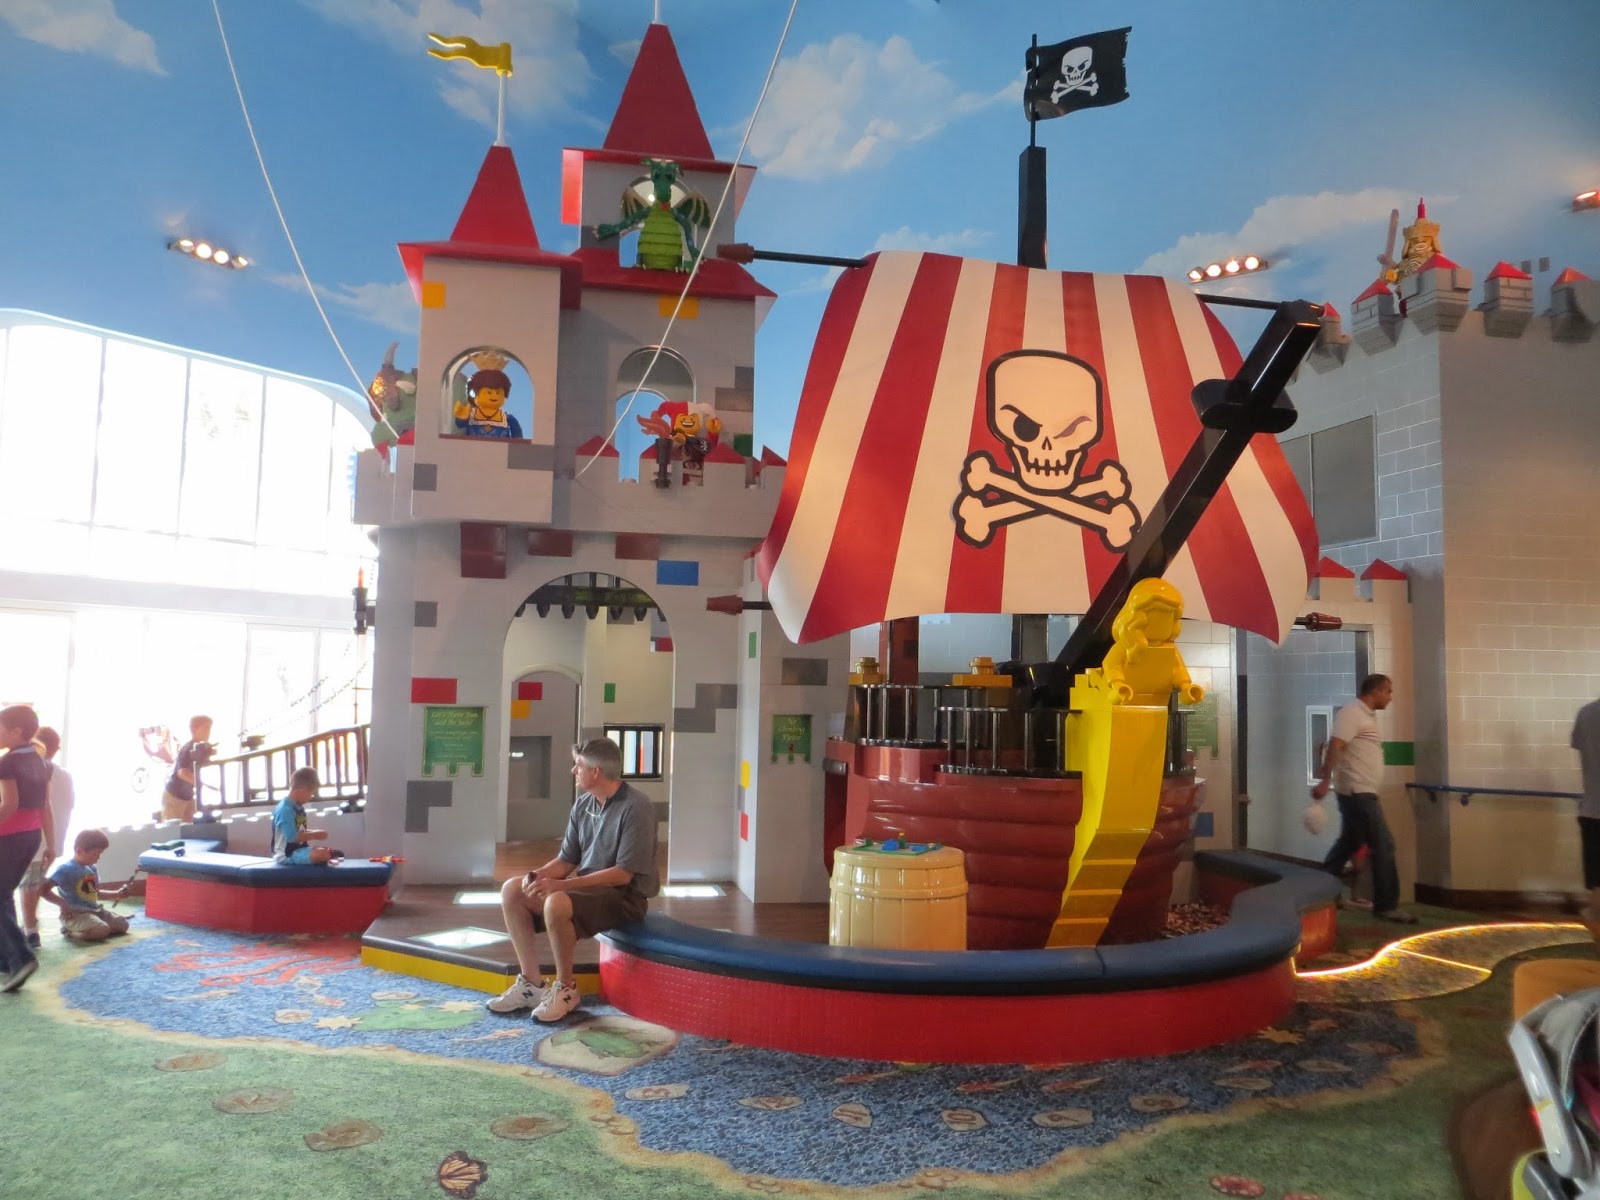 It's Fun 4 Me!: Legoland California